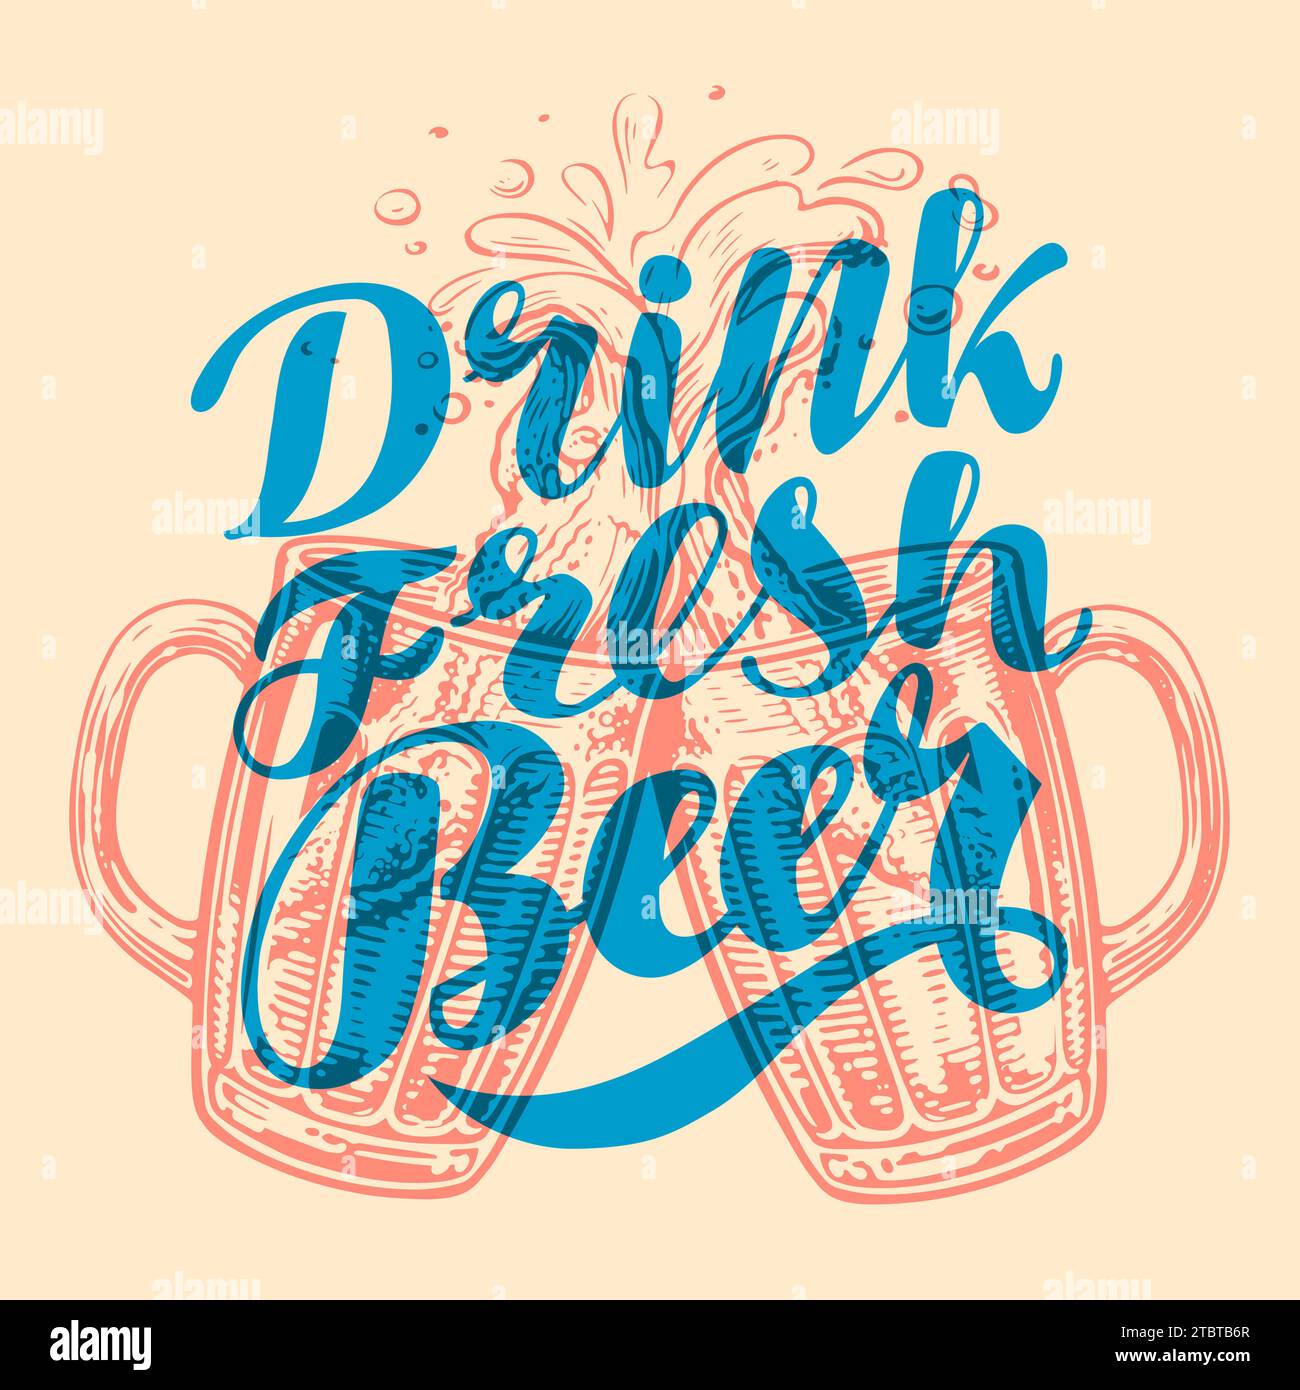 Bebe cerveza fresca. Ilustración vectorial vintage con letras de caligrafía para cartel, fiesta o invitación de festival Ilustración del Vector